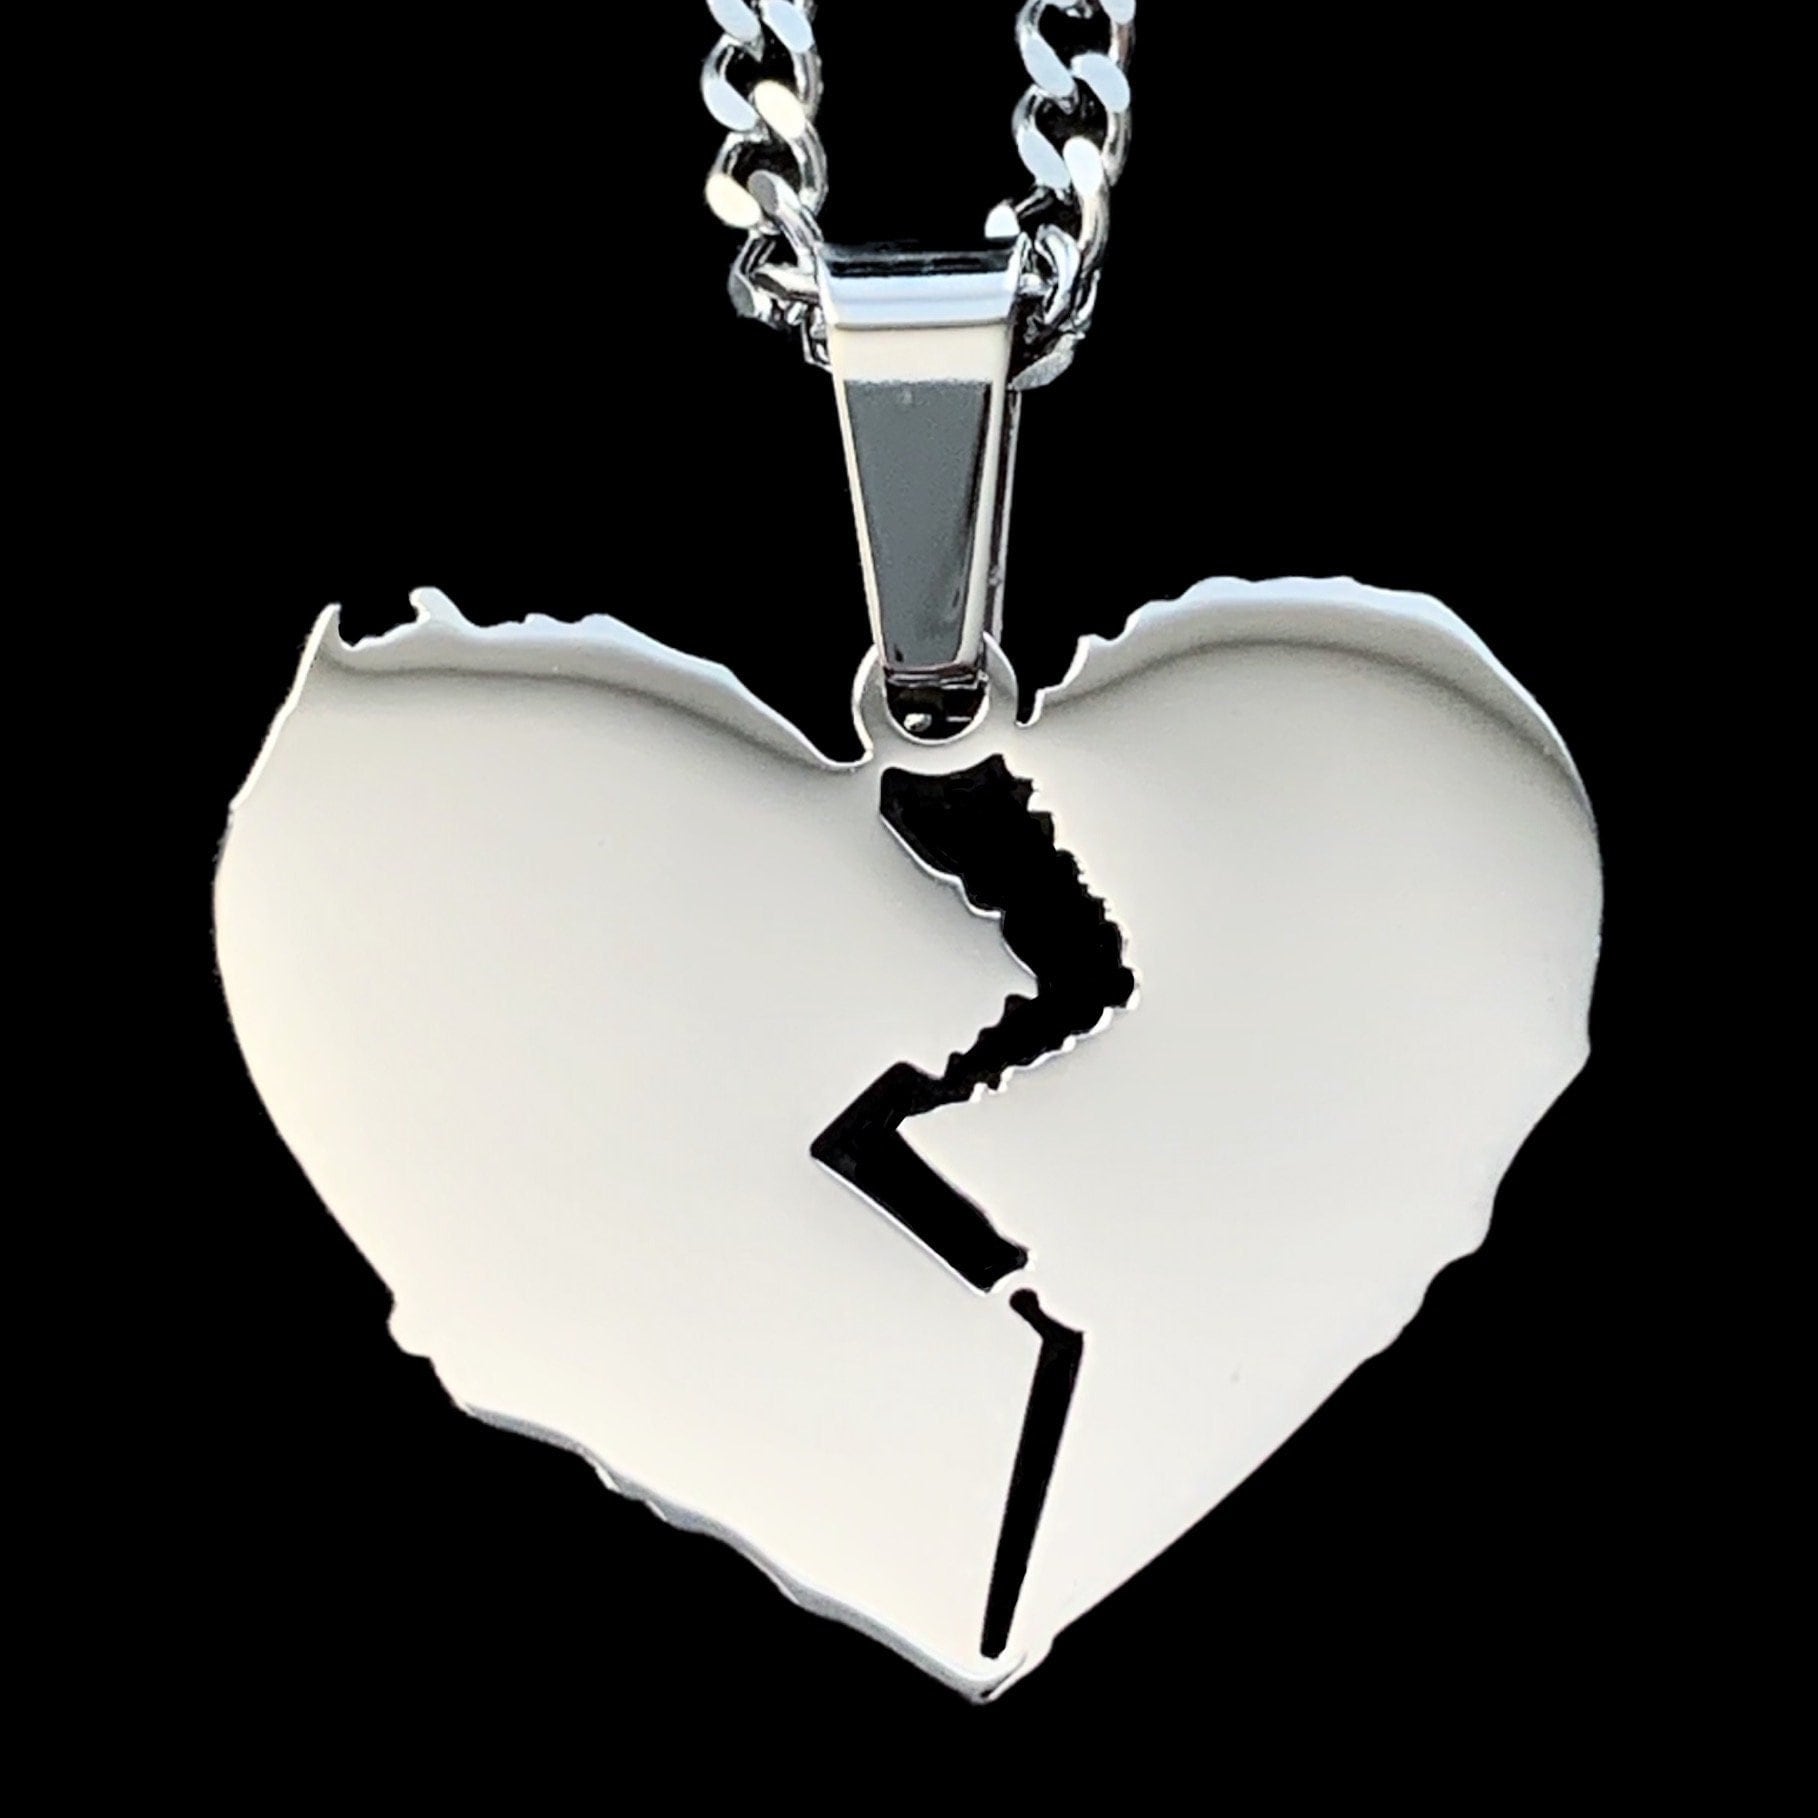 Lil Peep Love Rabbit Pendant Necklace Hip Hop Chain Necklace